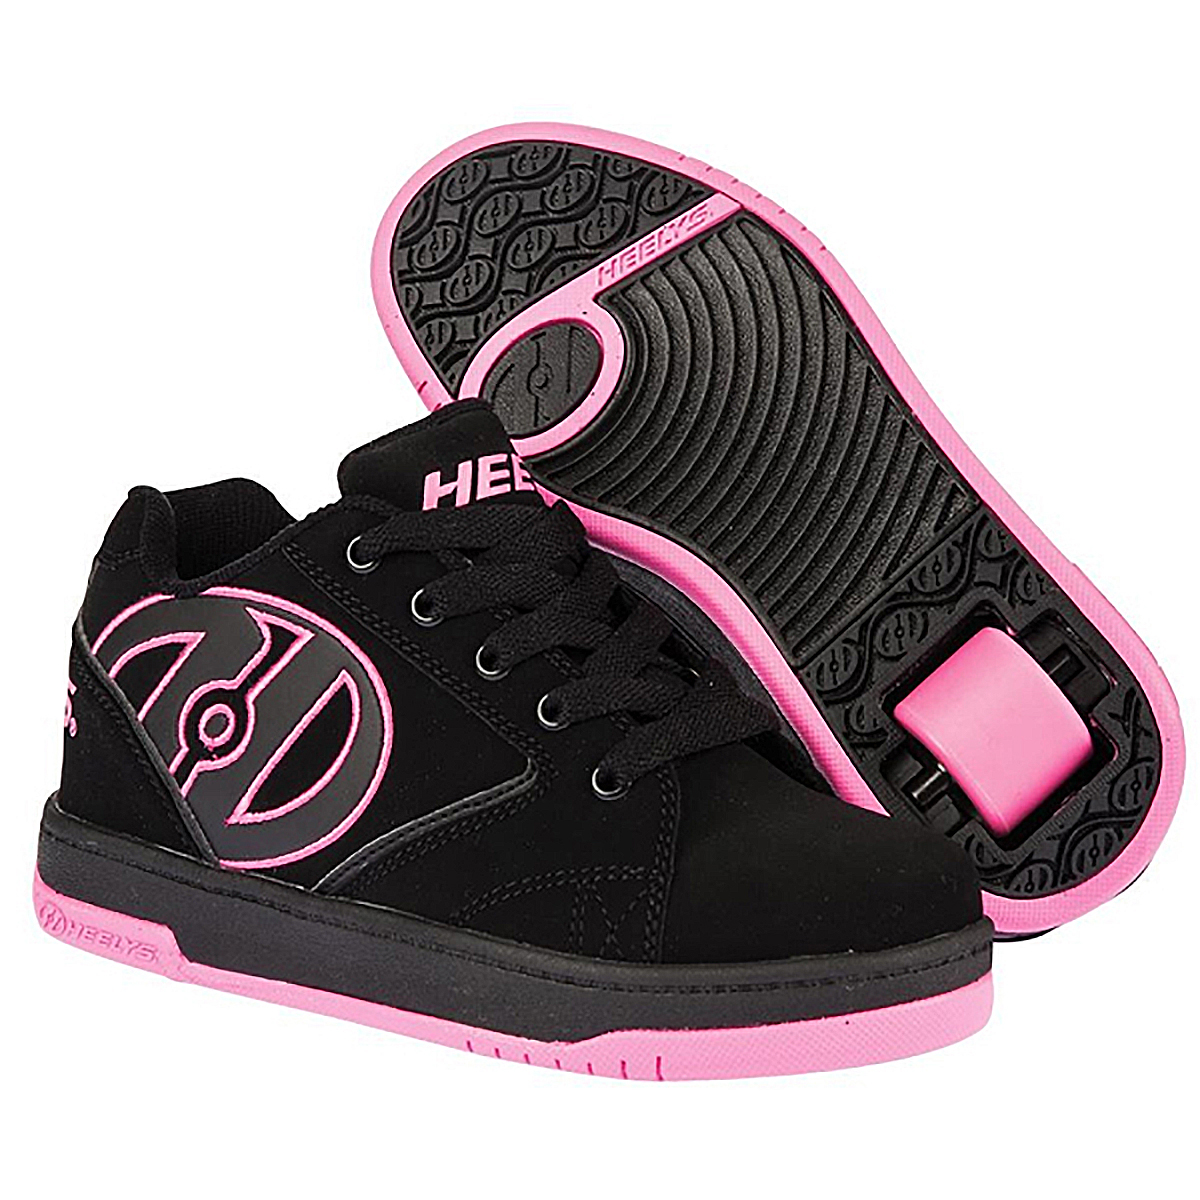 Кроссовки роликовые для девочки Heelys, цвет: черный, розовый. 770291. Размер 32 (31)